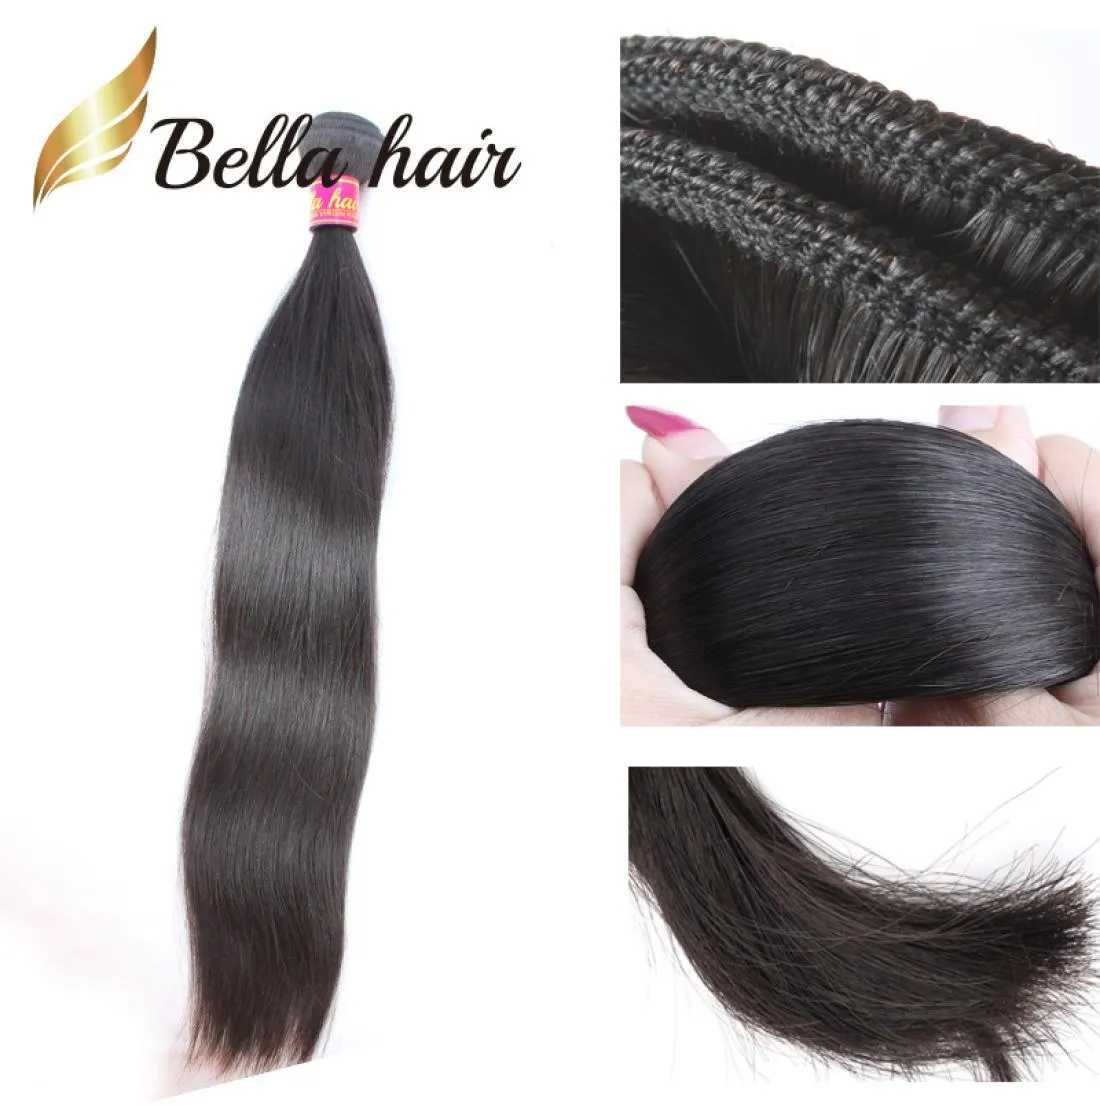 Bella Высшее качество 11A Бразильские пучки человеческих волос RAW Virgin Прямые необработанные толстые полные 1 шт. Наращивание волос может быть окрашено t1149814